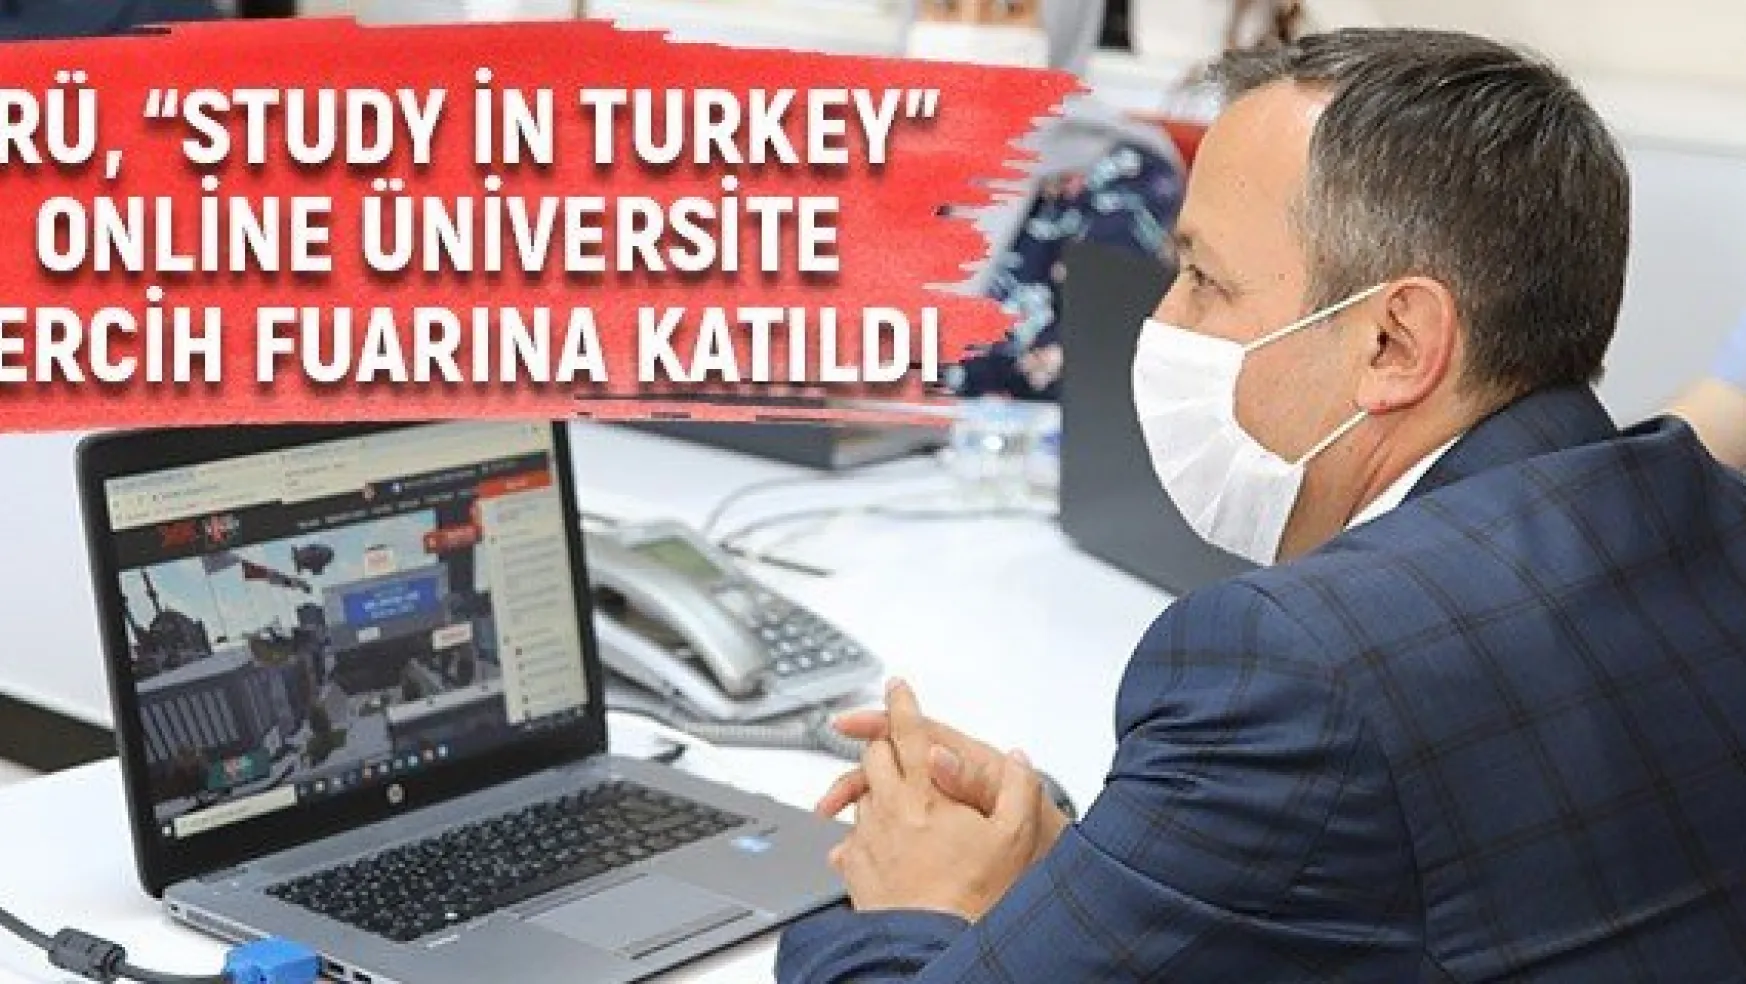 ERÜ, 'Study in Turkey' Online Üniversite Tercih Fuarına Katıldı